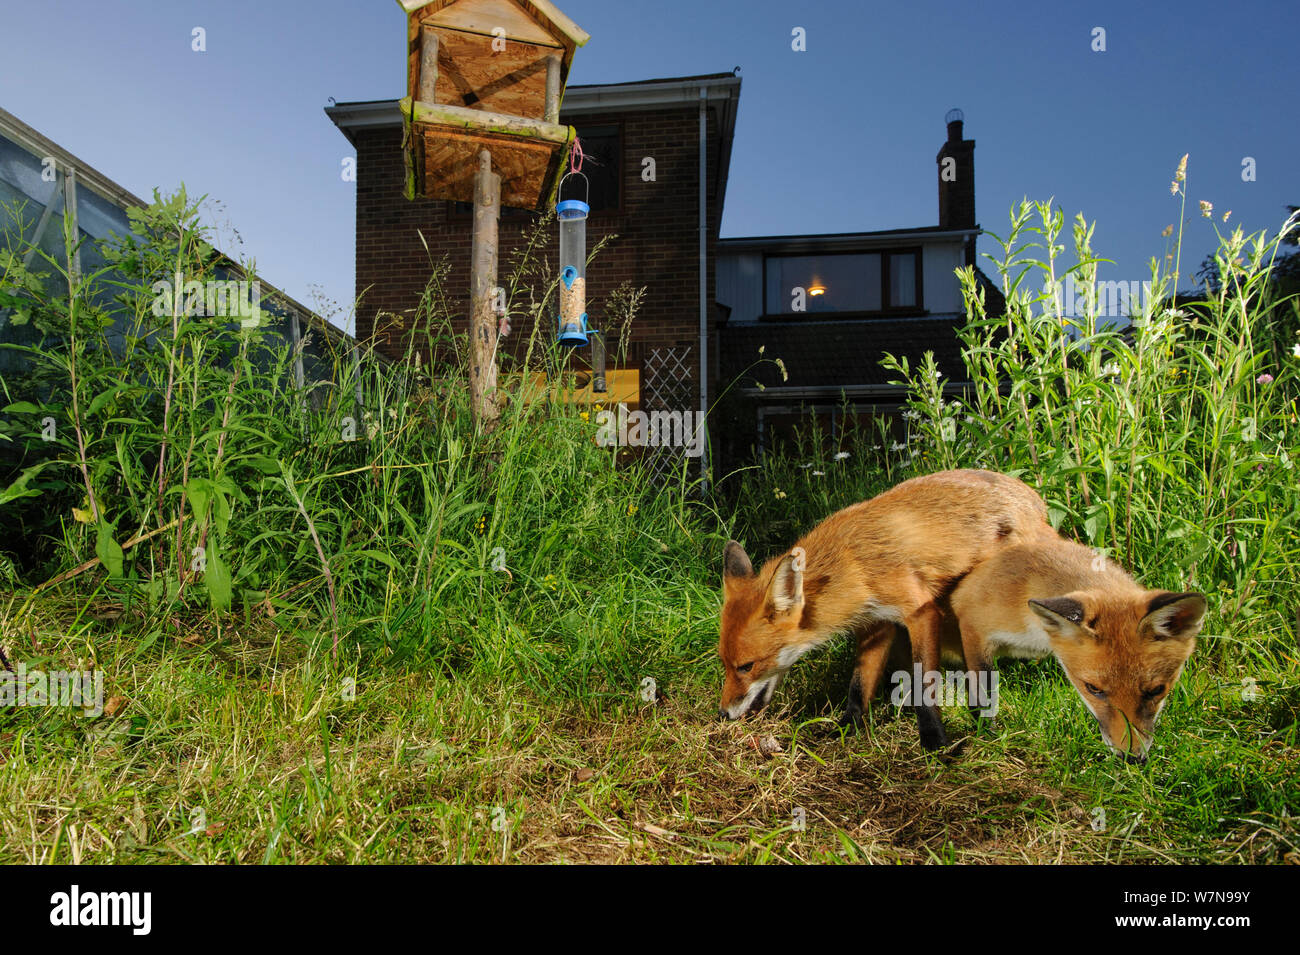 La volpe rossa (Vulpes vulpes vulpes) foraggio per scaps in town house garden gestito per widlife. Vixen e cub. Kent, Regno Unito, Giugno. Fotocamera immagine trap. Proprietà rilasciato. Foto Stock